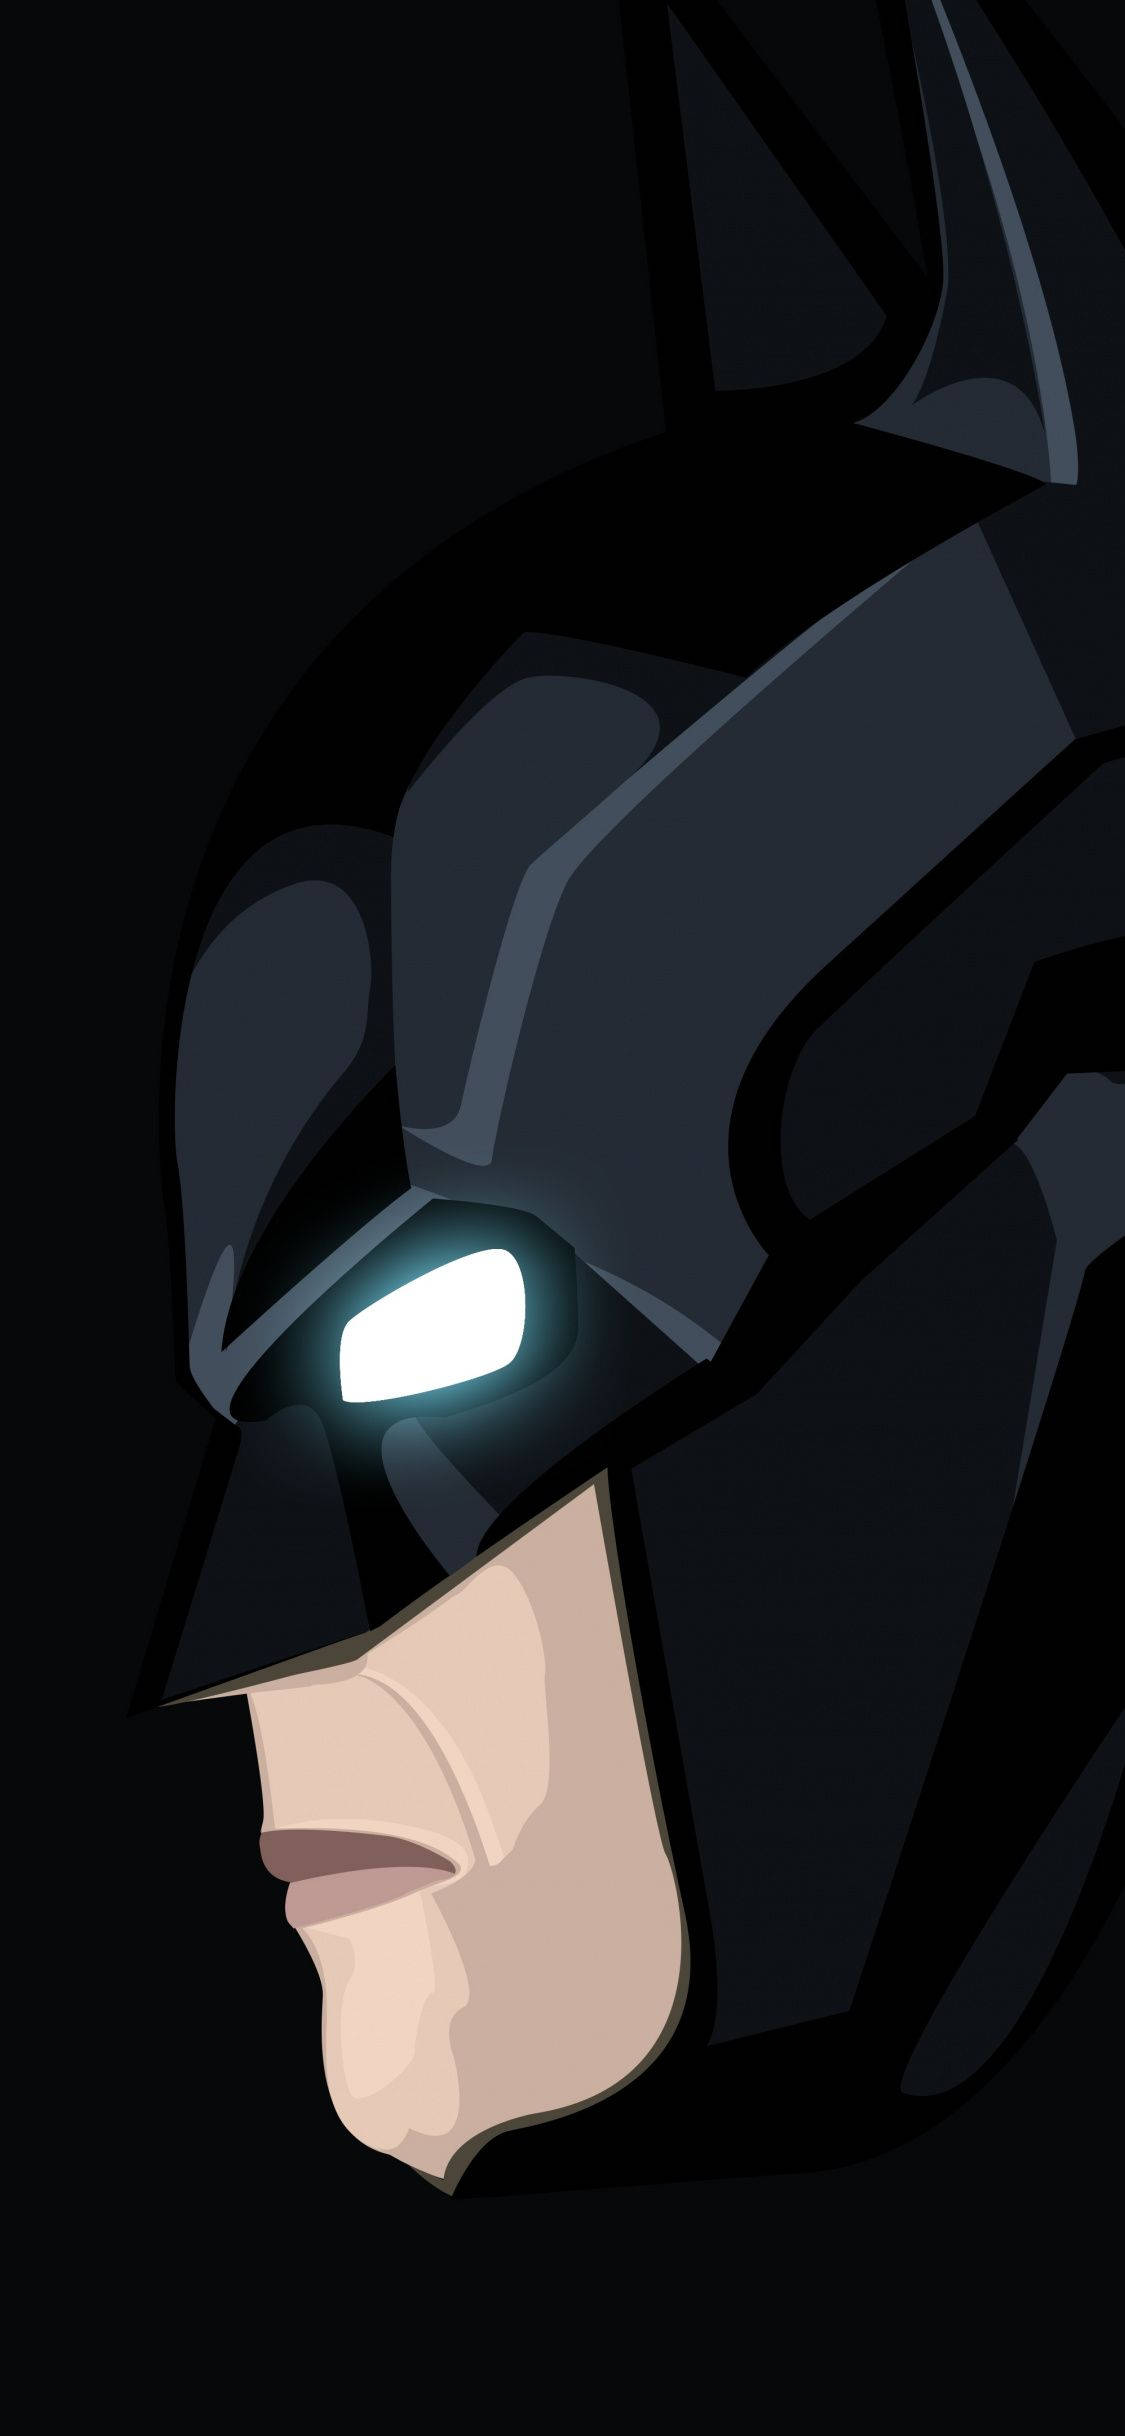 Batman Dark Knight Art iPhone X Wallpaper